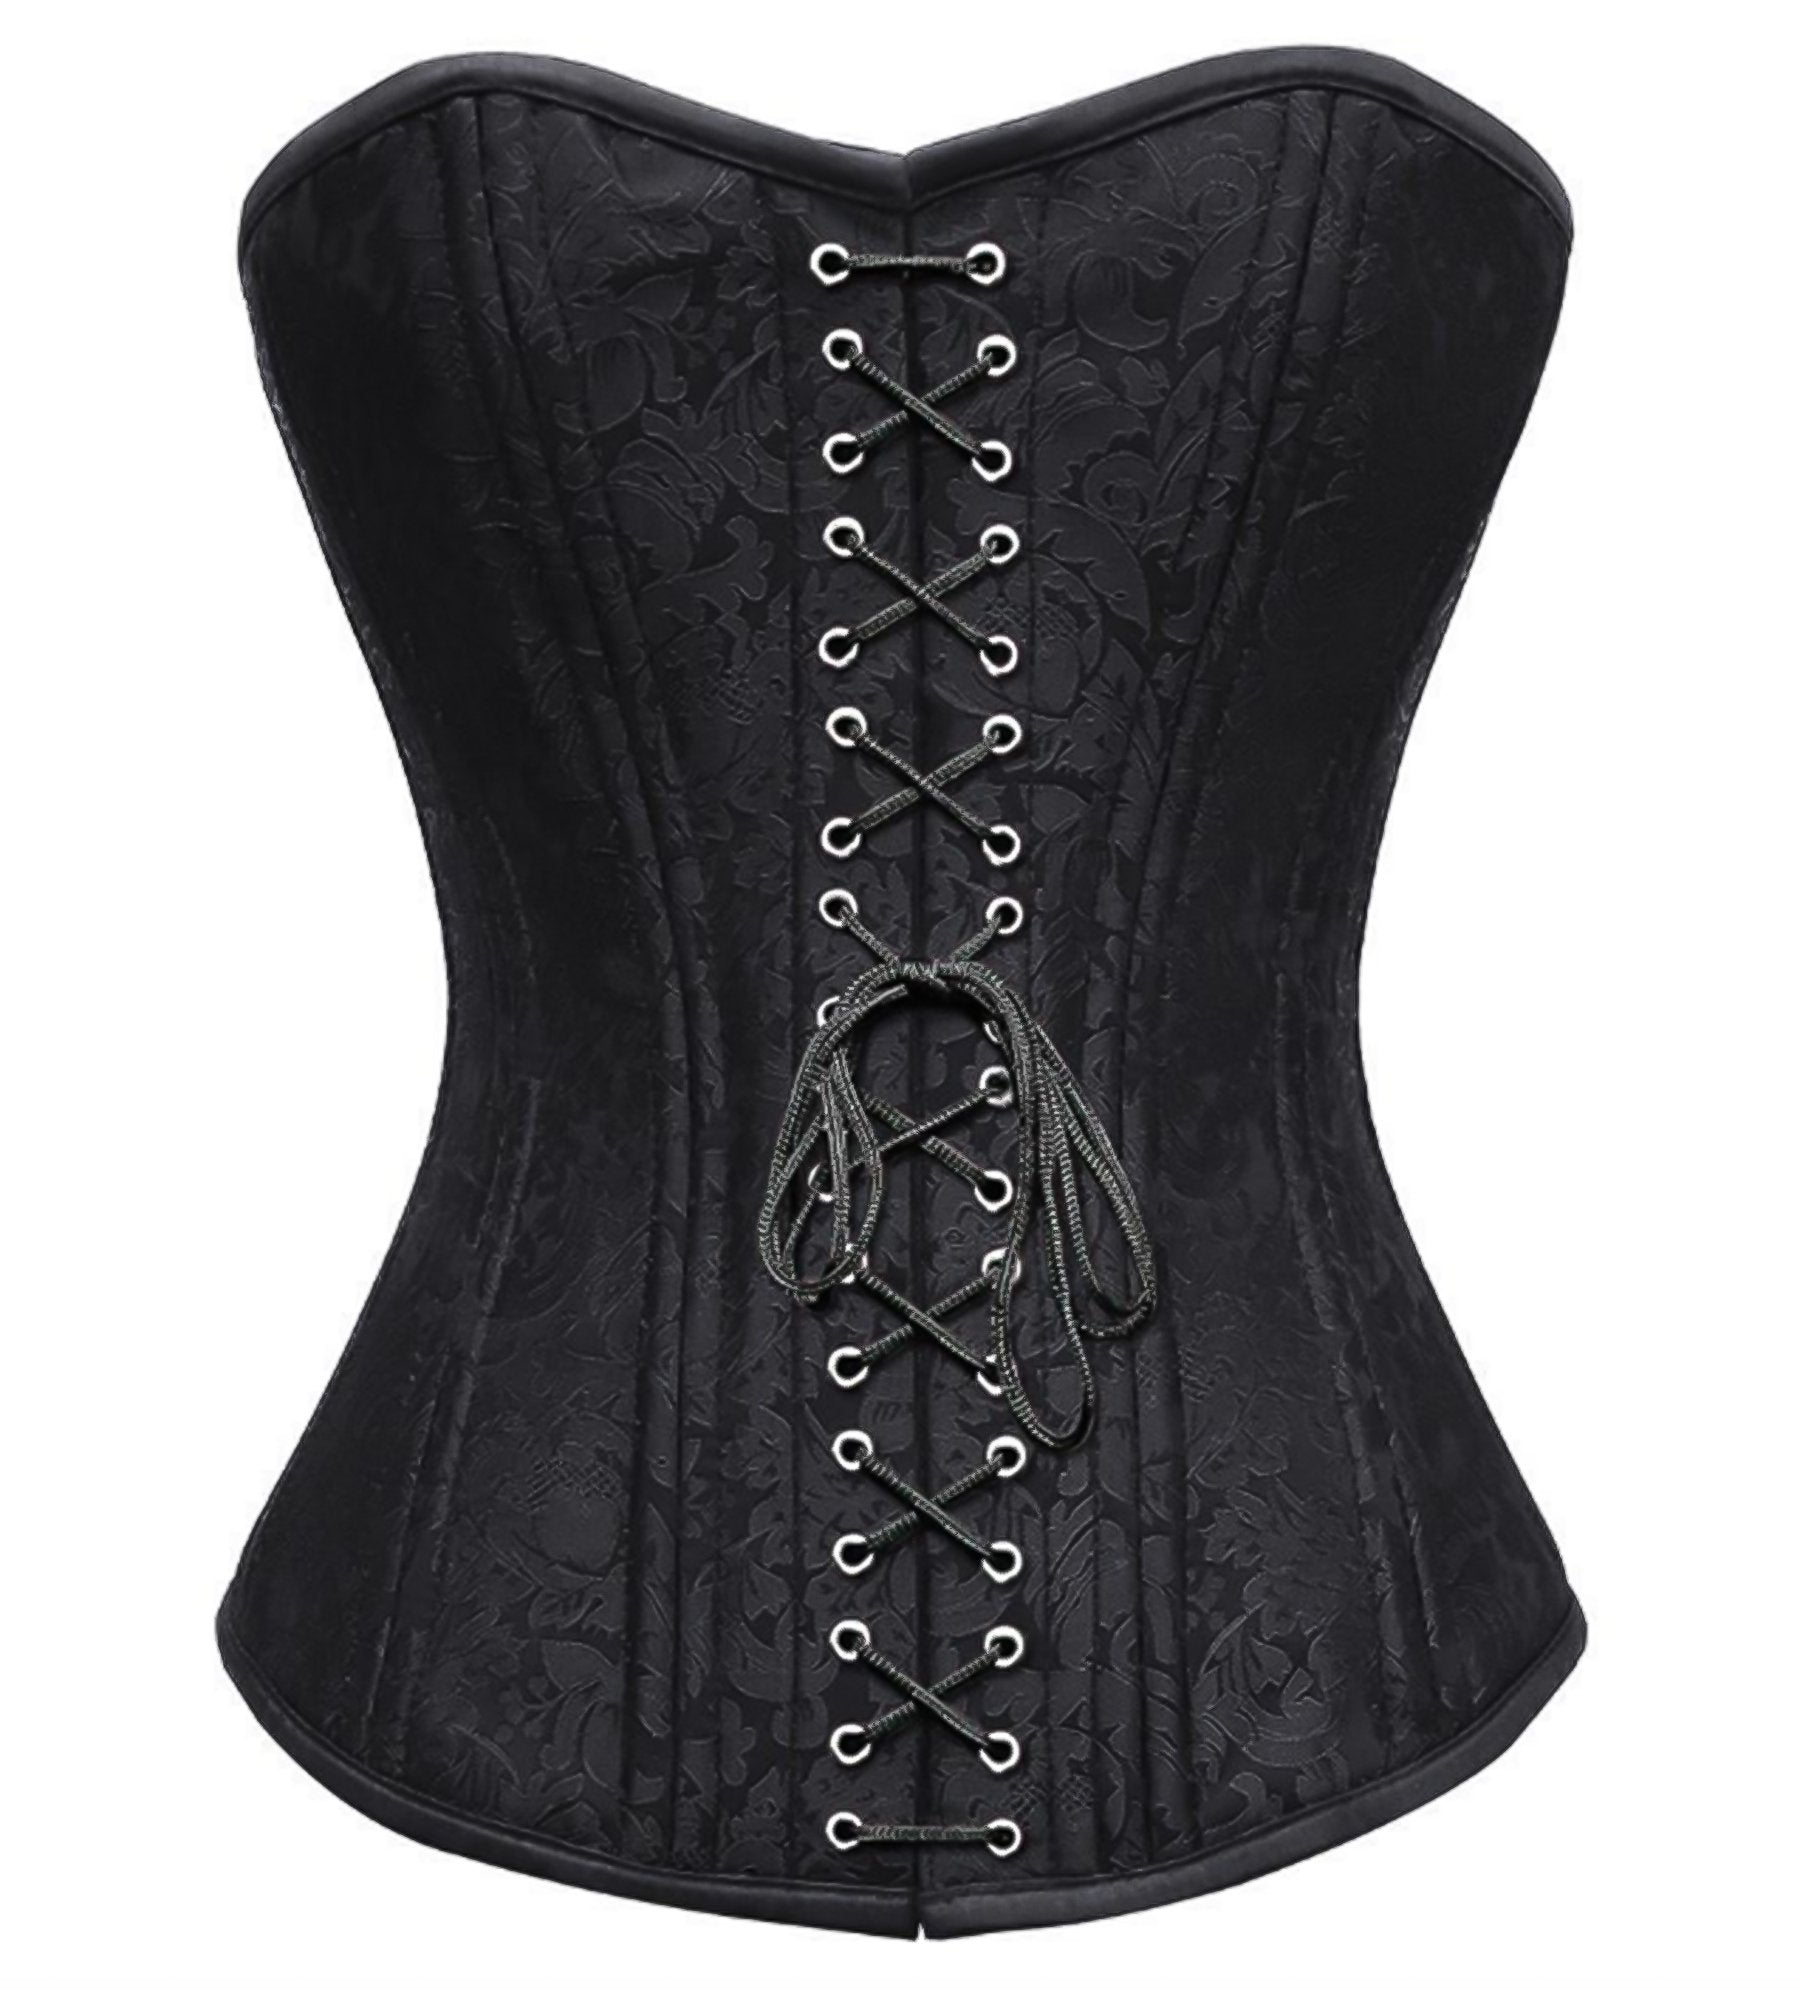 http://corsetsnmore.com/cdn/shop/products/CNM-676_1_dd19f9a3-c268-4b3d-af60-7a8d2f4ffb91.jpg?v=1603481041